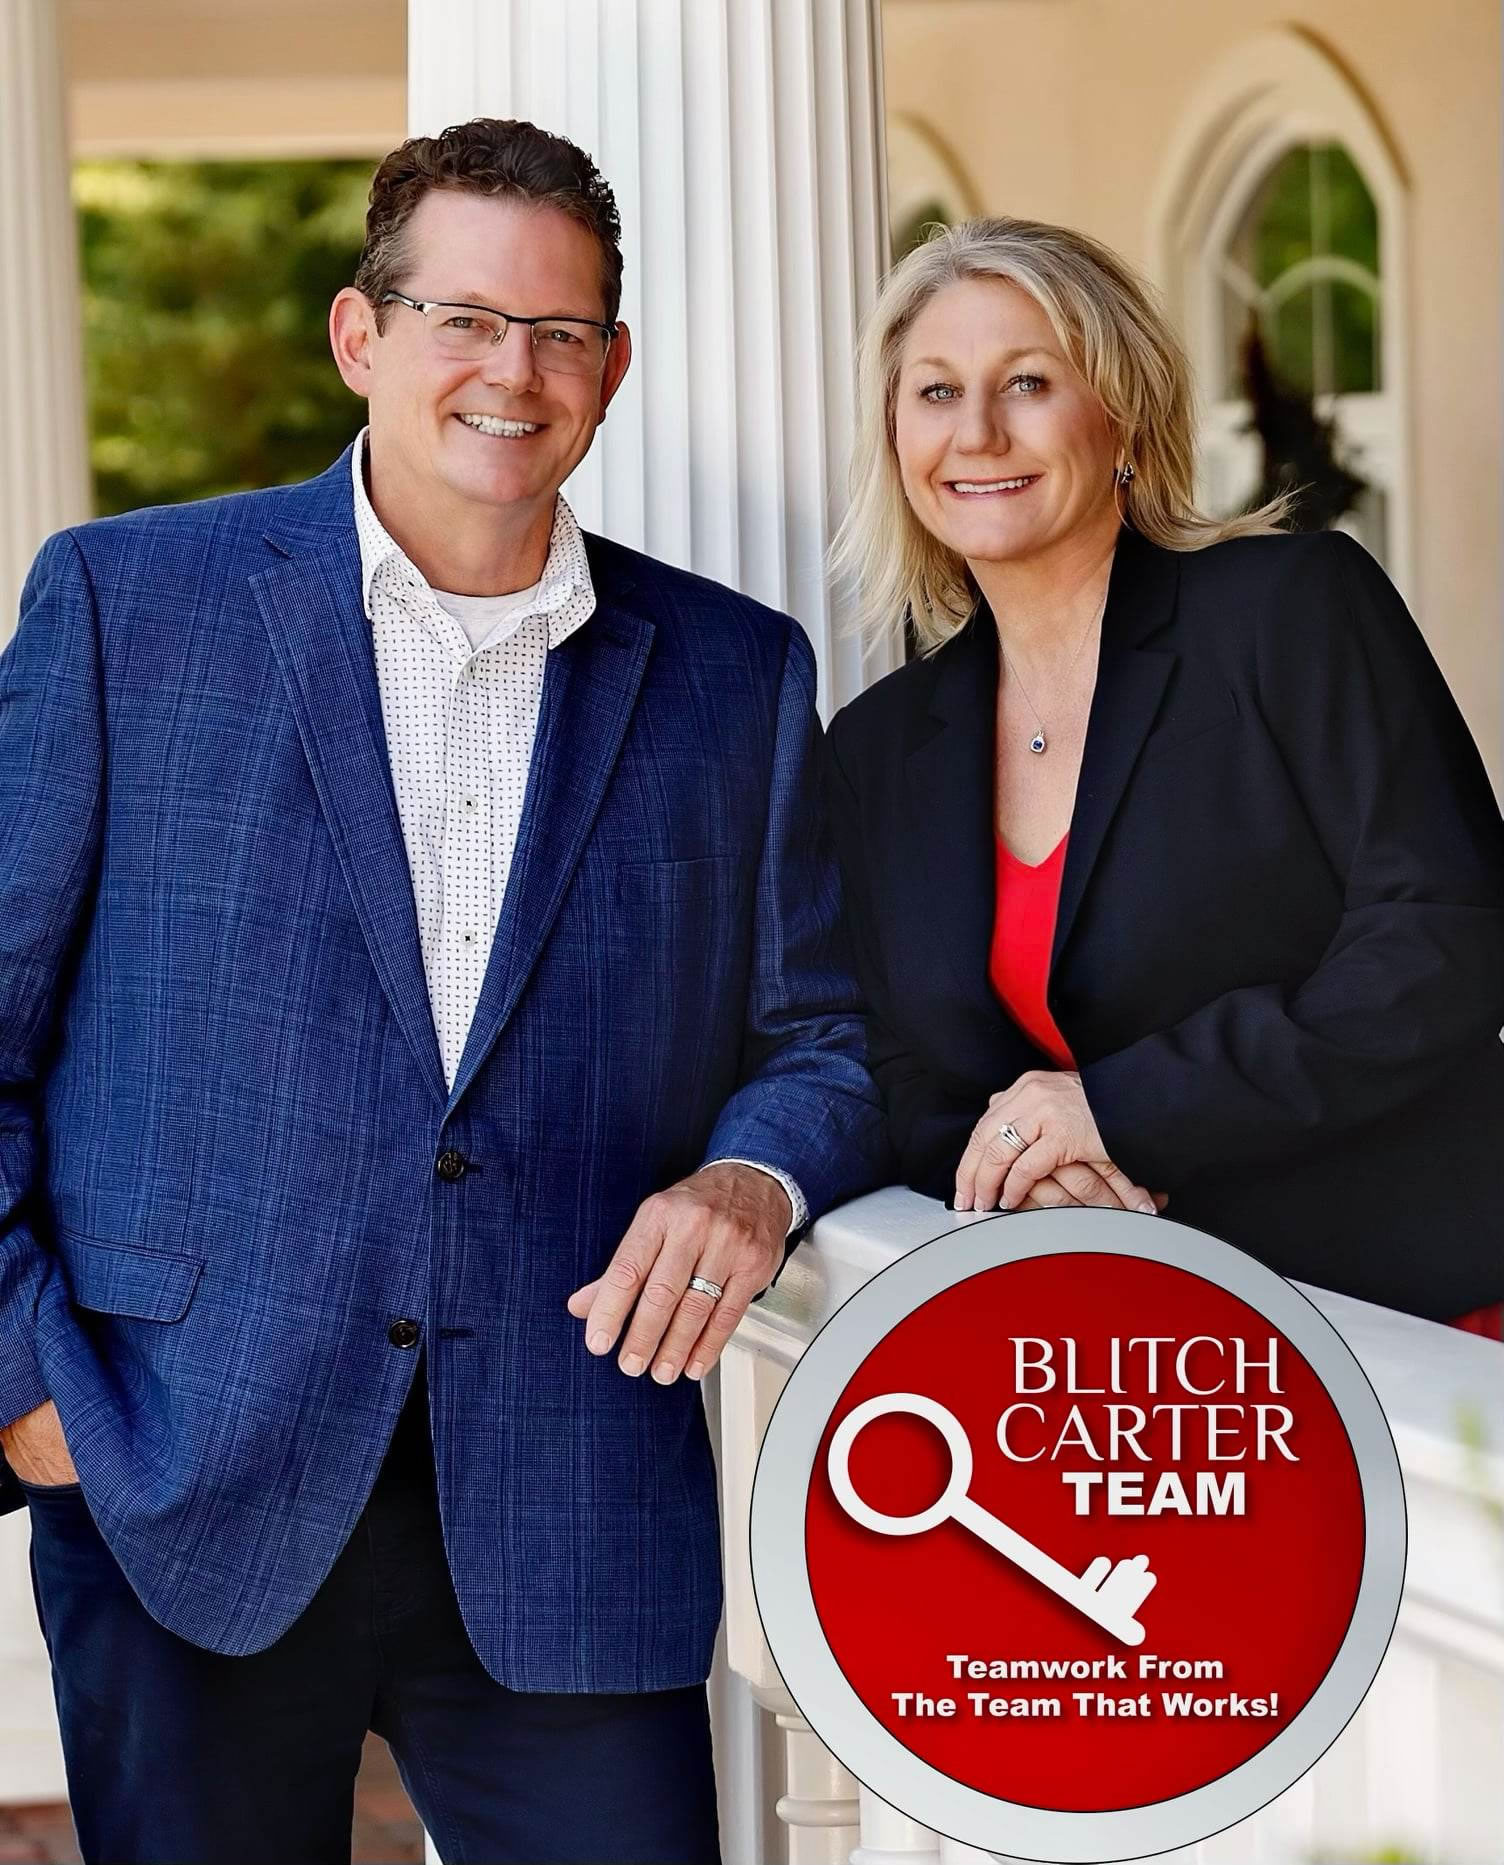 Bill and Linda real estate brokers